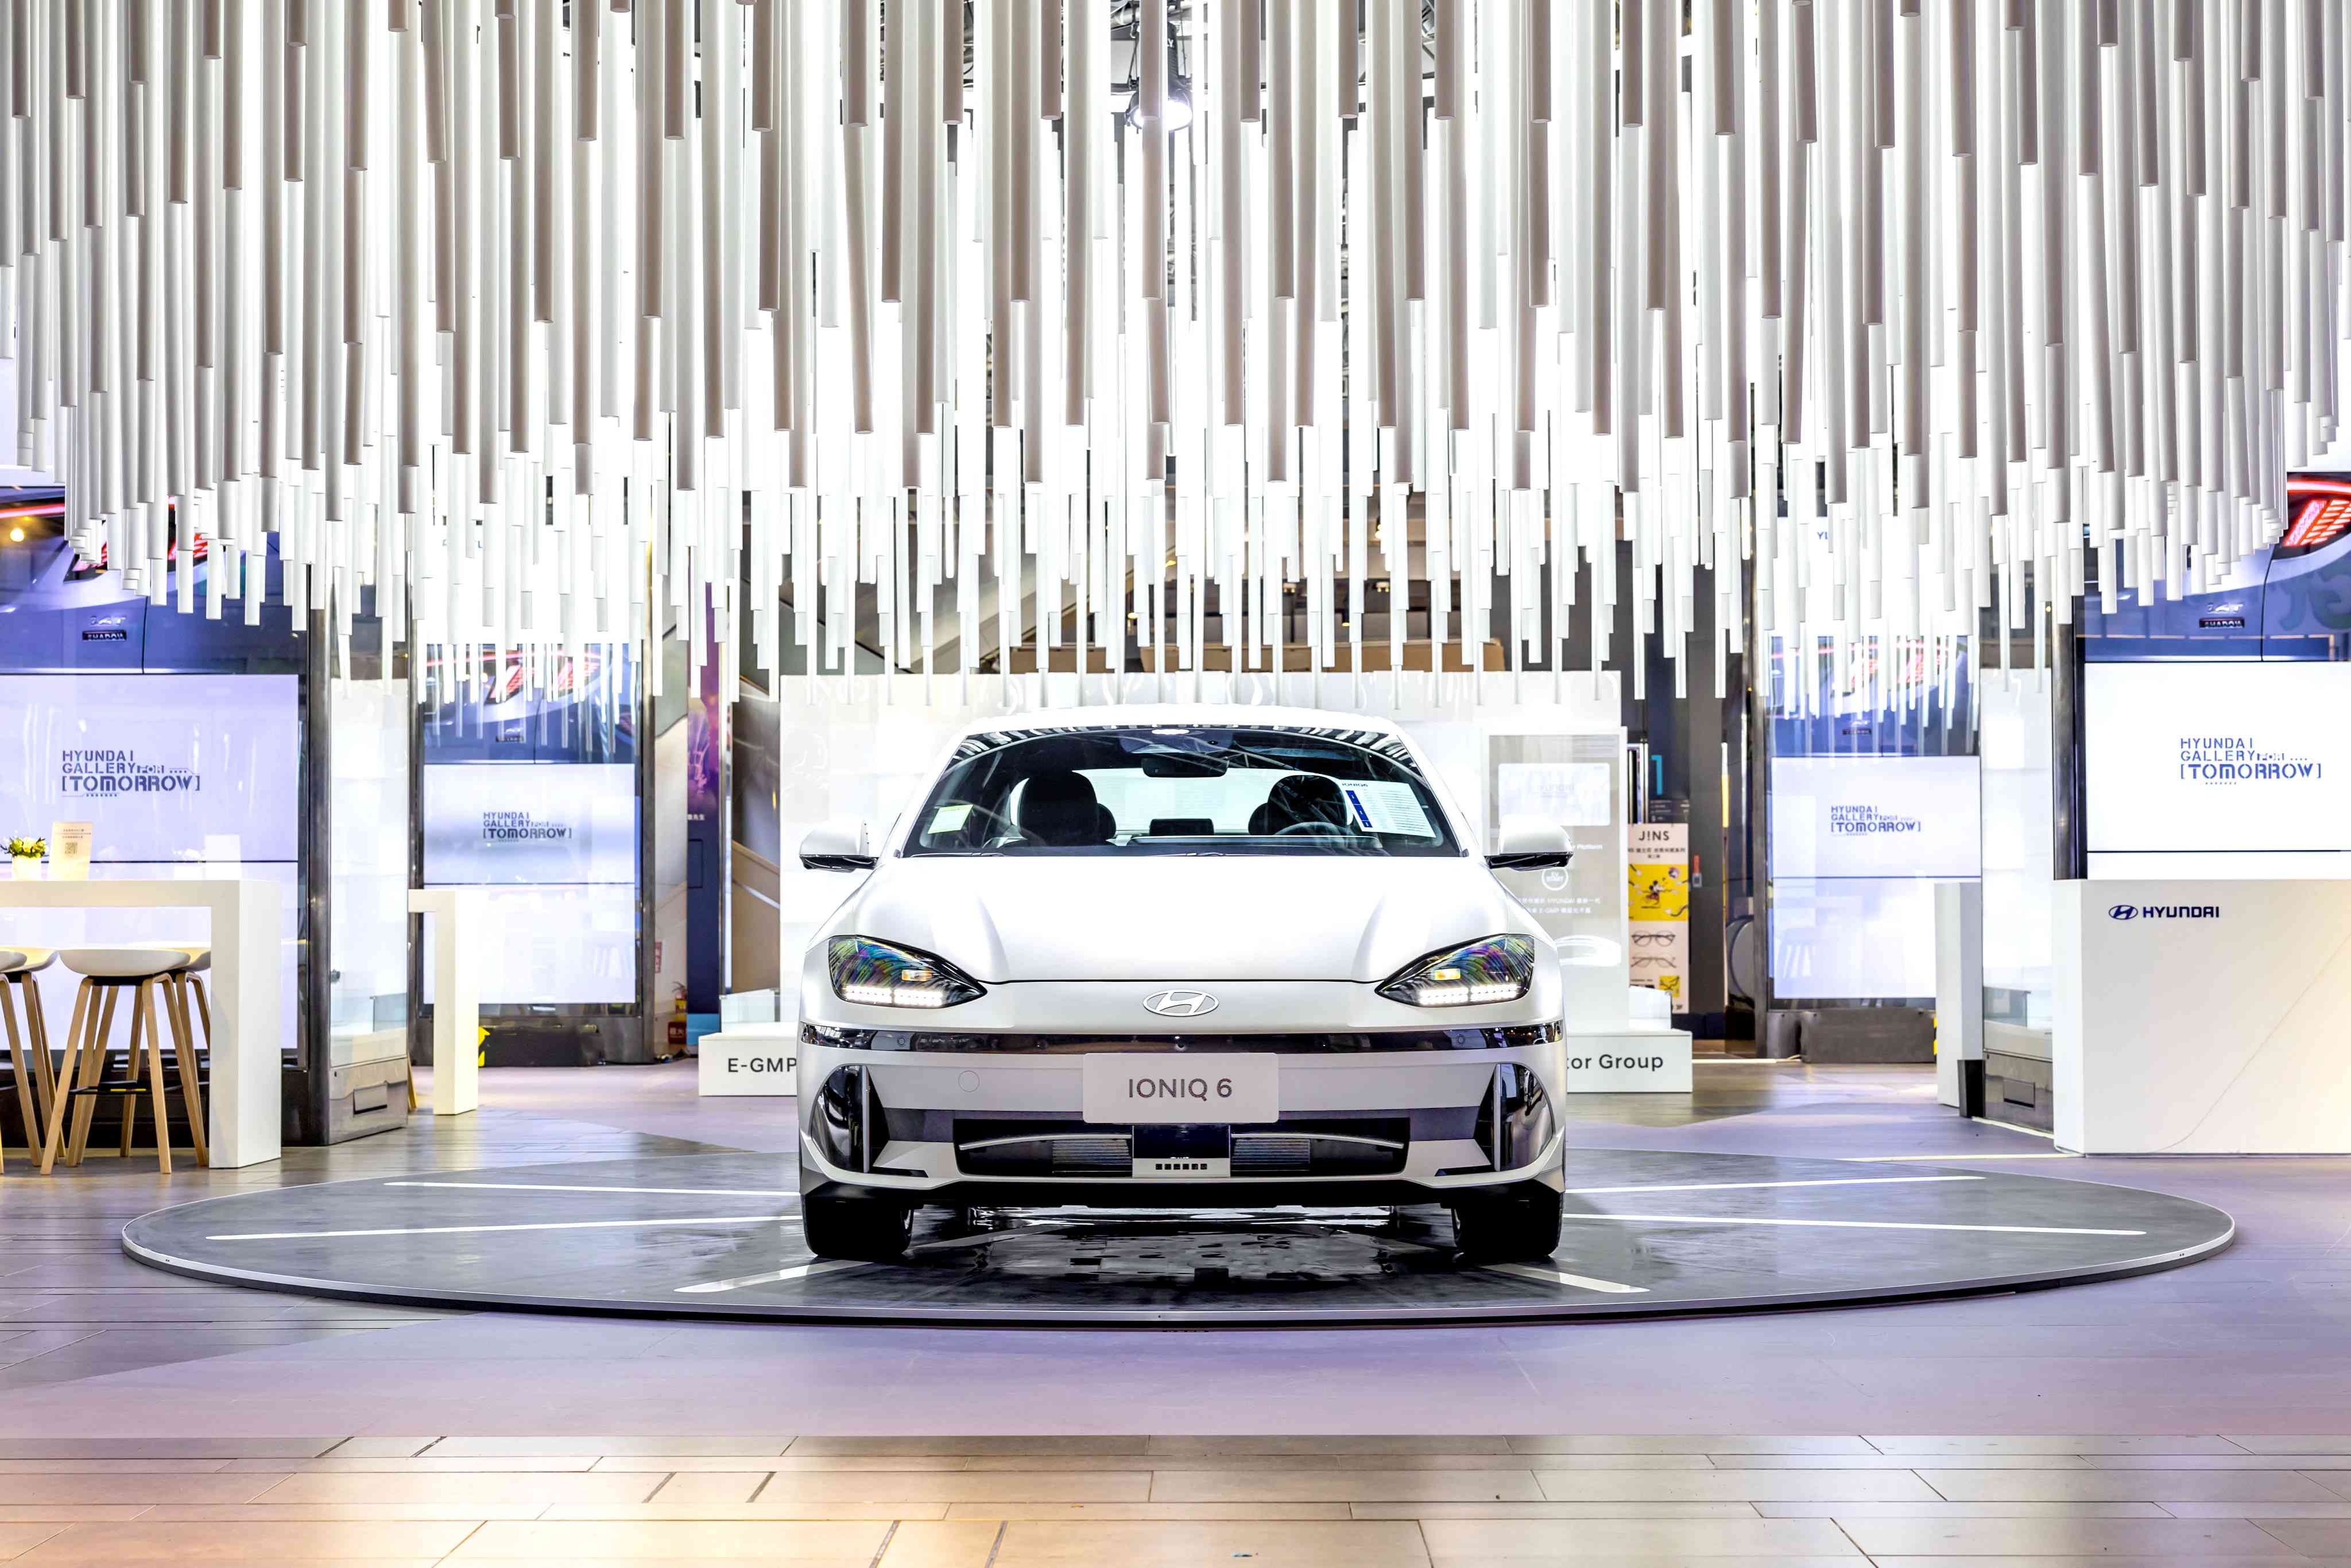 「Hyundai Gallery · For Tomorrow」品牌展開幕集結新車、新能源科技  探索解密IONIQ電動車世界